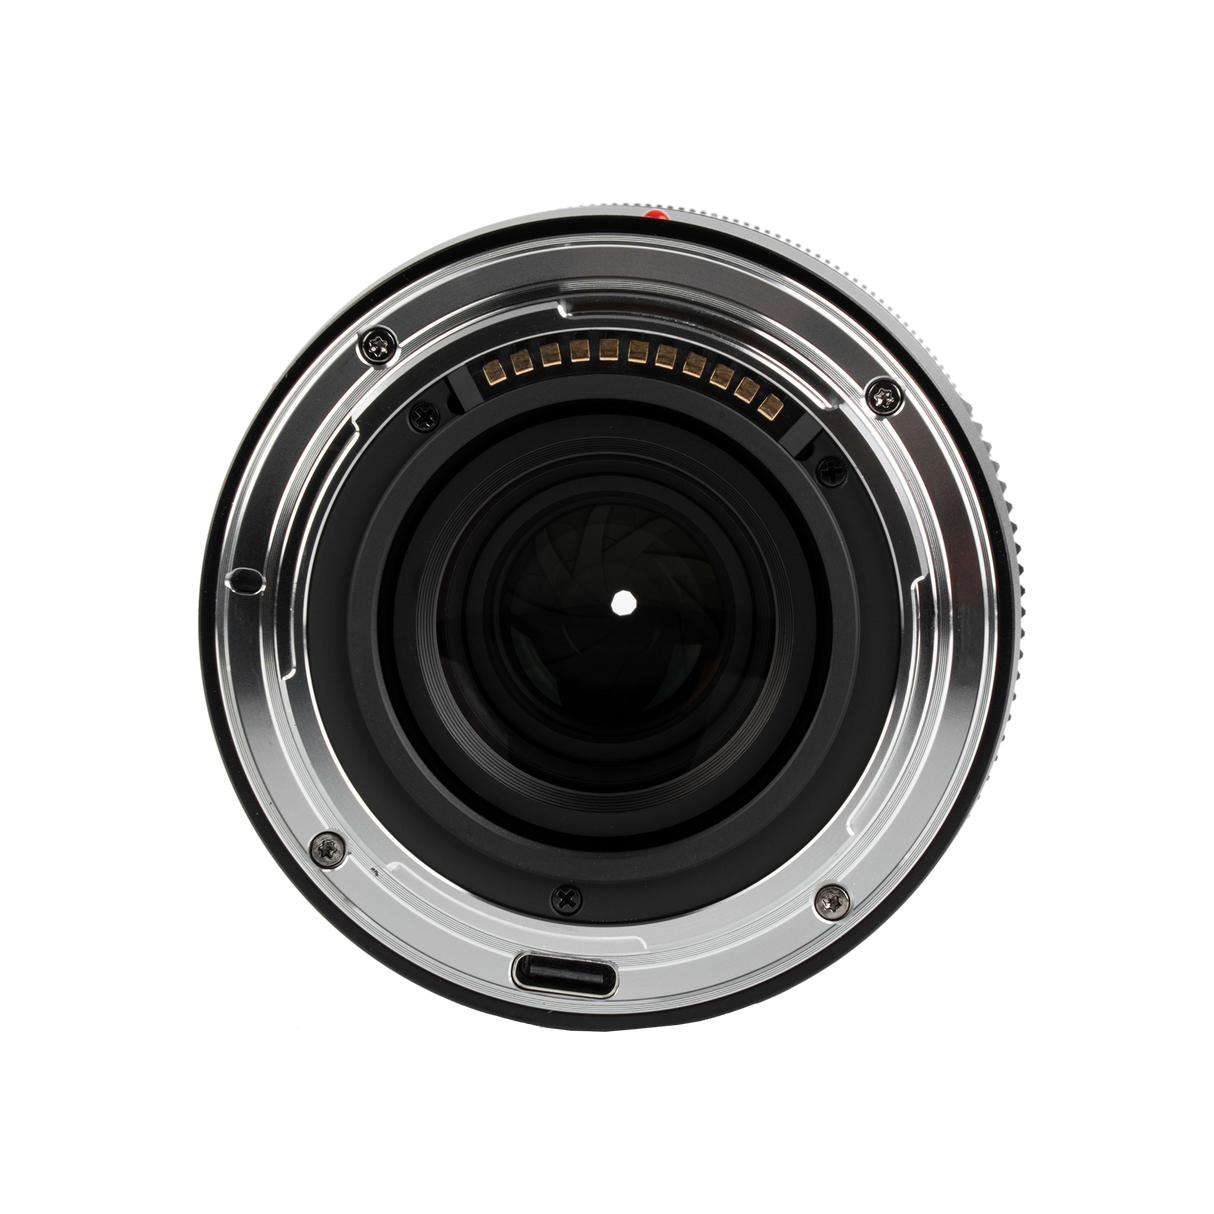 Lens af 28mm f/1.8 nikon z mount